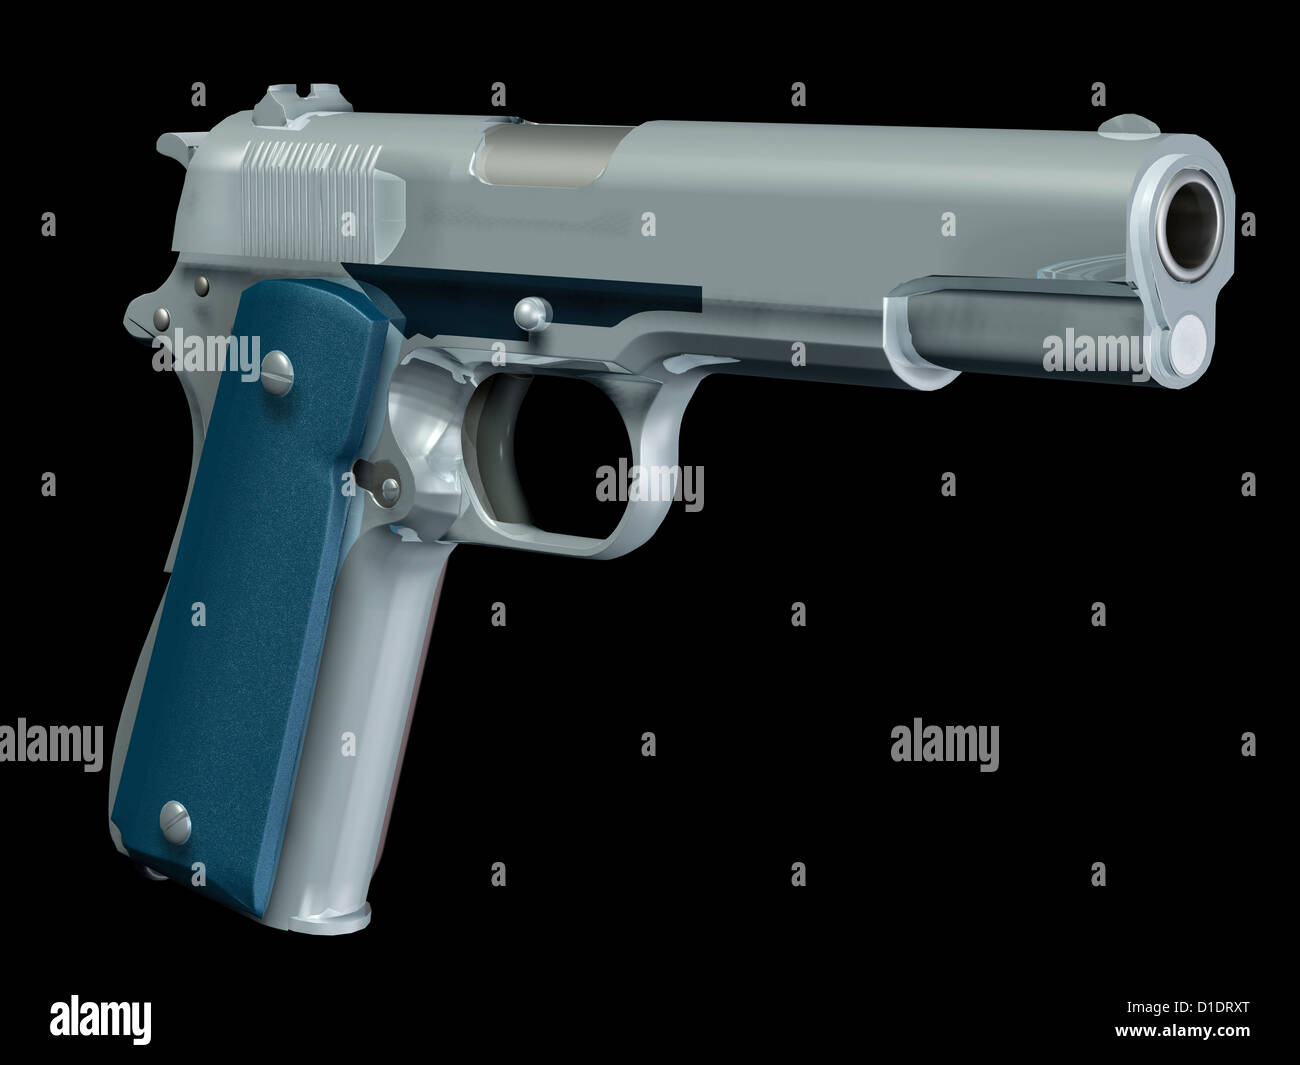 handgun, a colt pistol Stock Photo